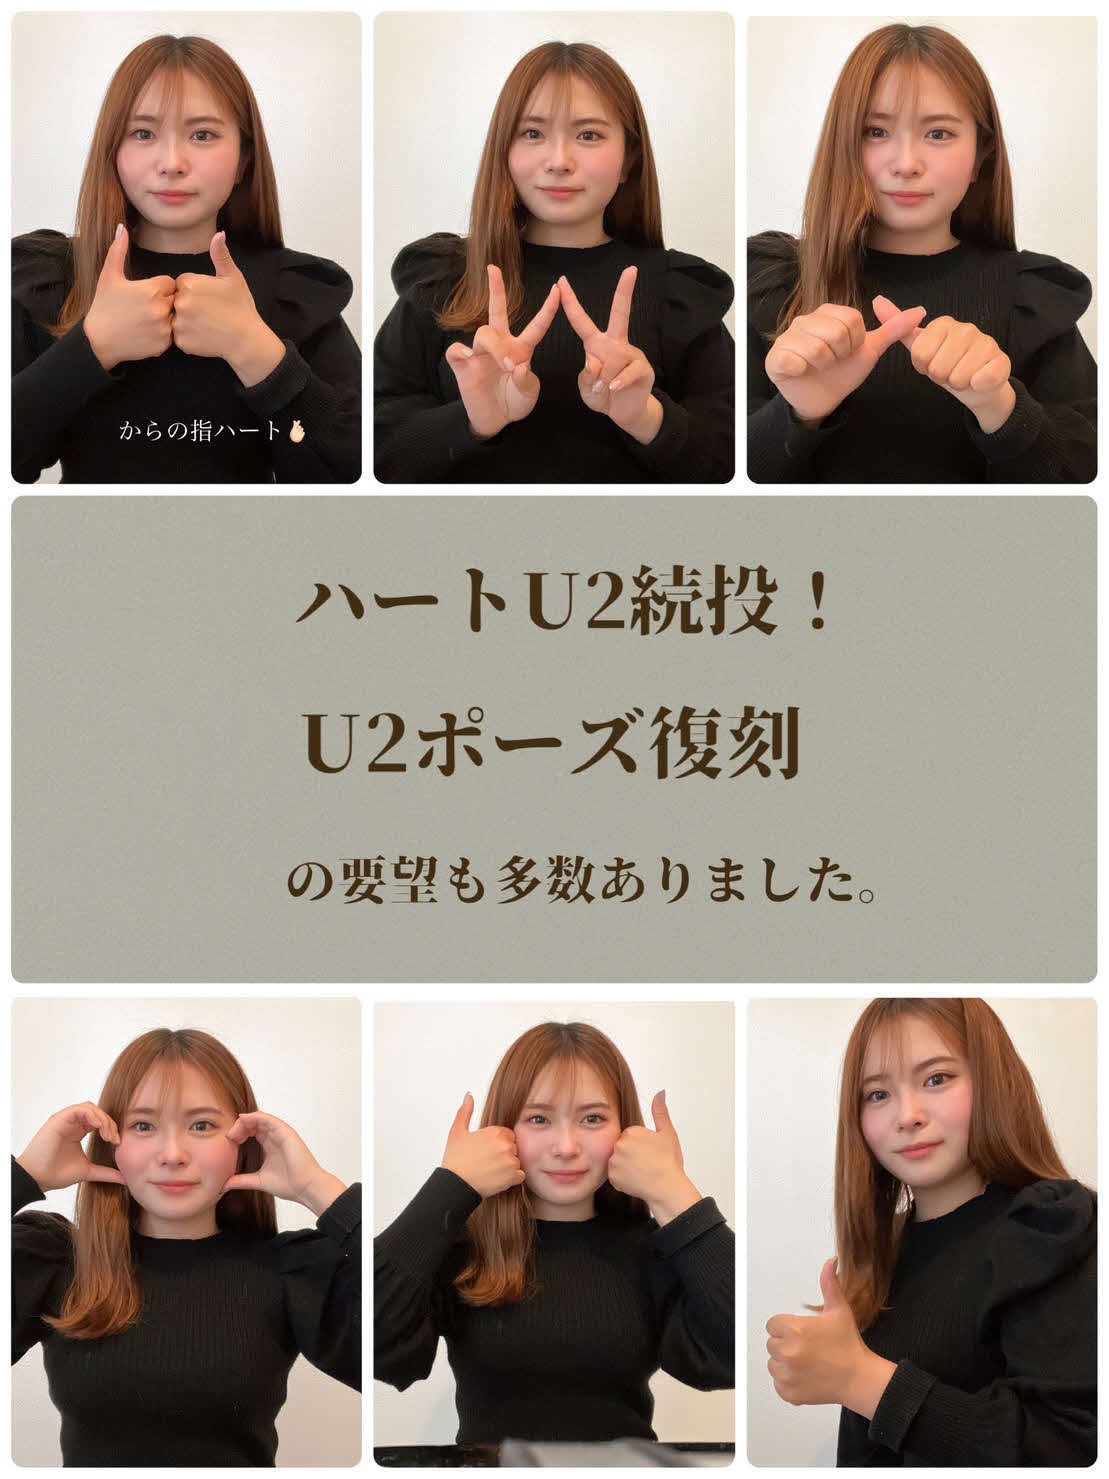 阪神梅野隆太郎捕手の新ポーズの提案。左上は「U2ポーズから指ハート」、上中央は「Winポーズ」、右上は「親指でハートU2」、左下は「顔を挟んでハート」中央下は「顔を挟んでU2ポーズ」右下は梅野から採用された「みんなでU2ポーズ」